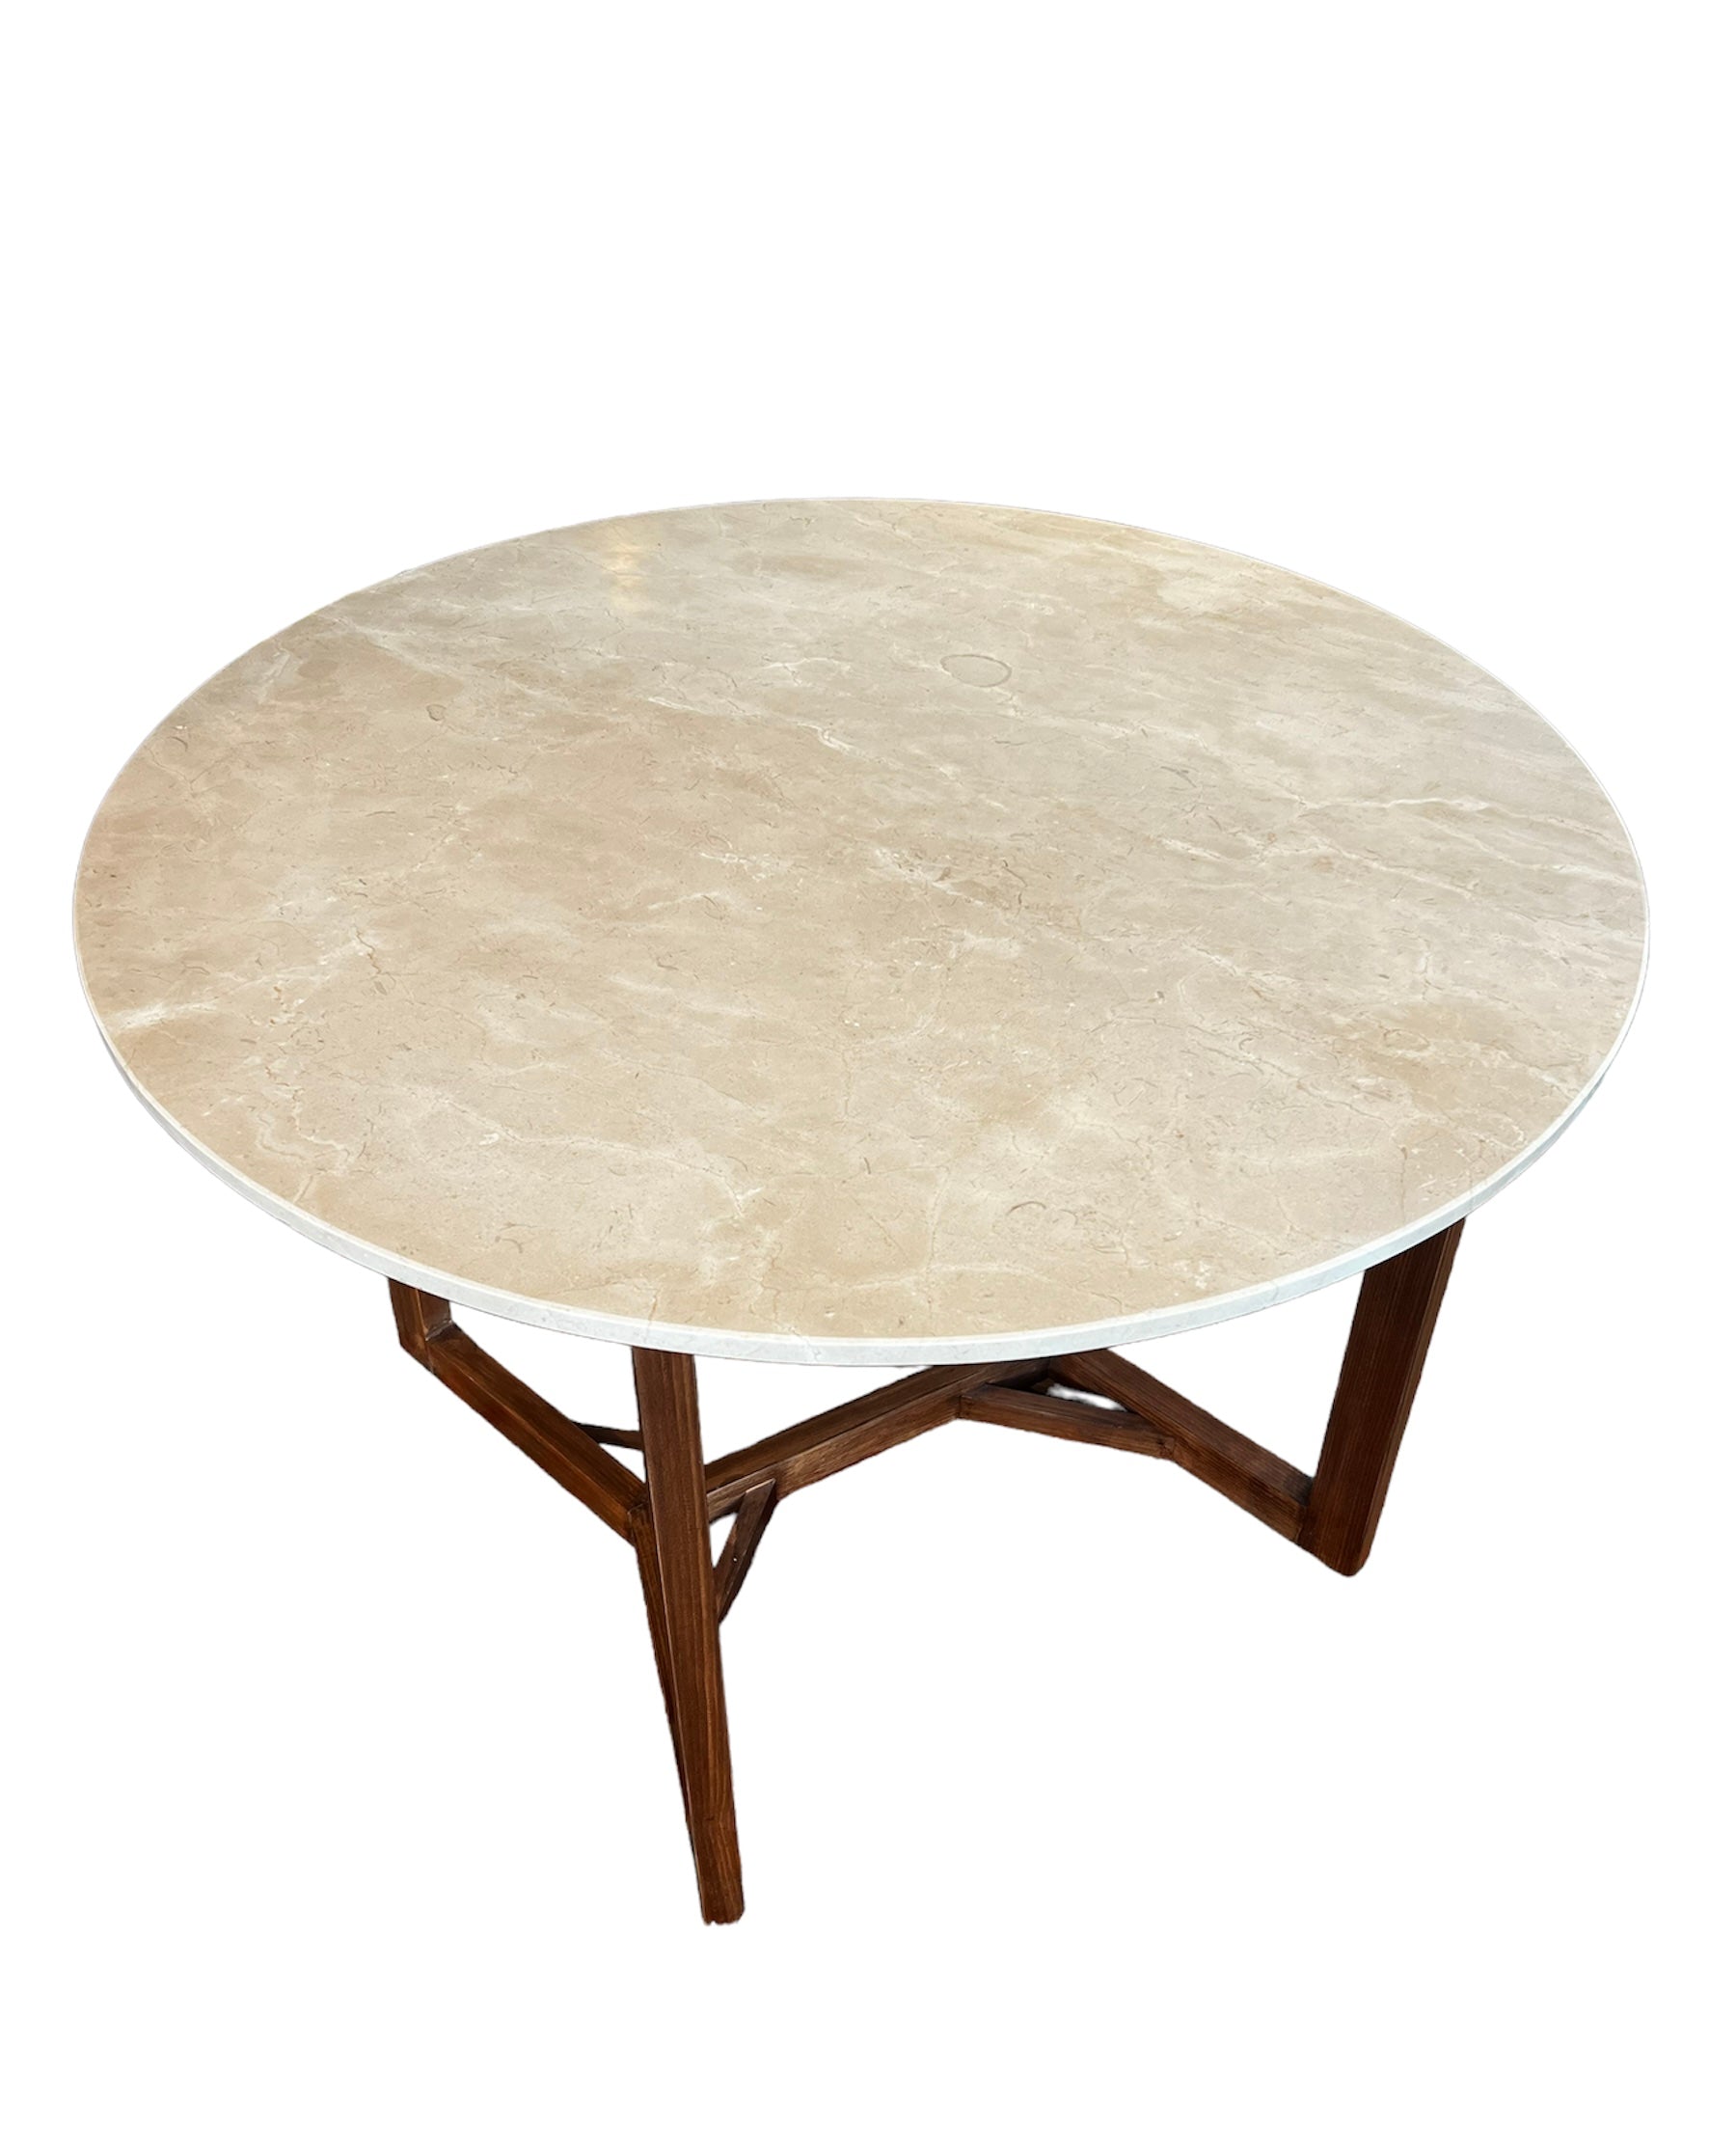 Rundt marmor spisebord sand farve  